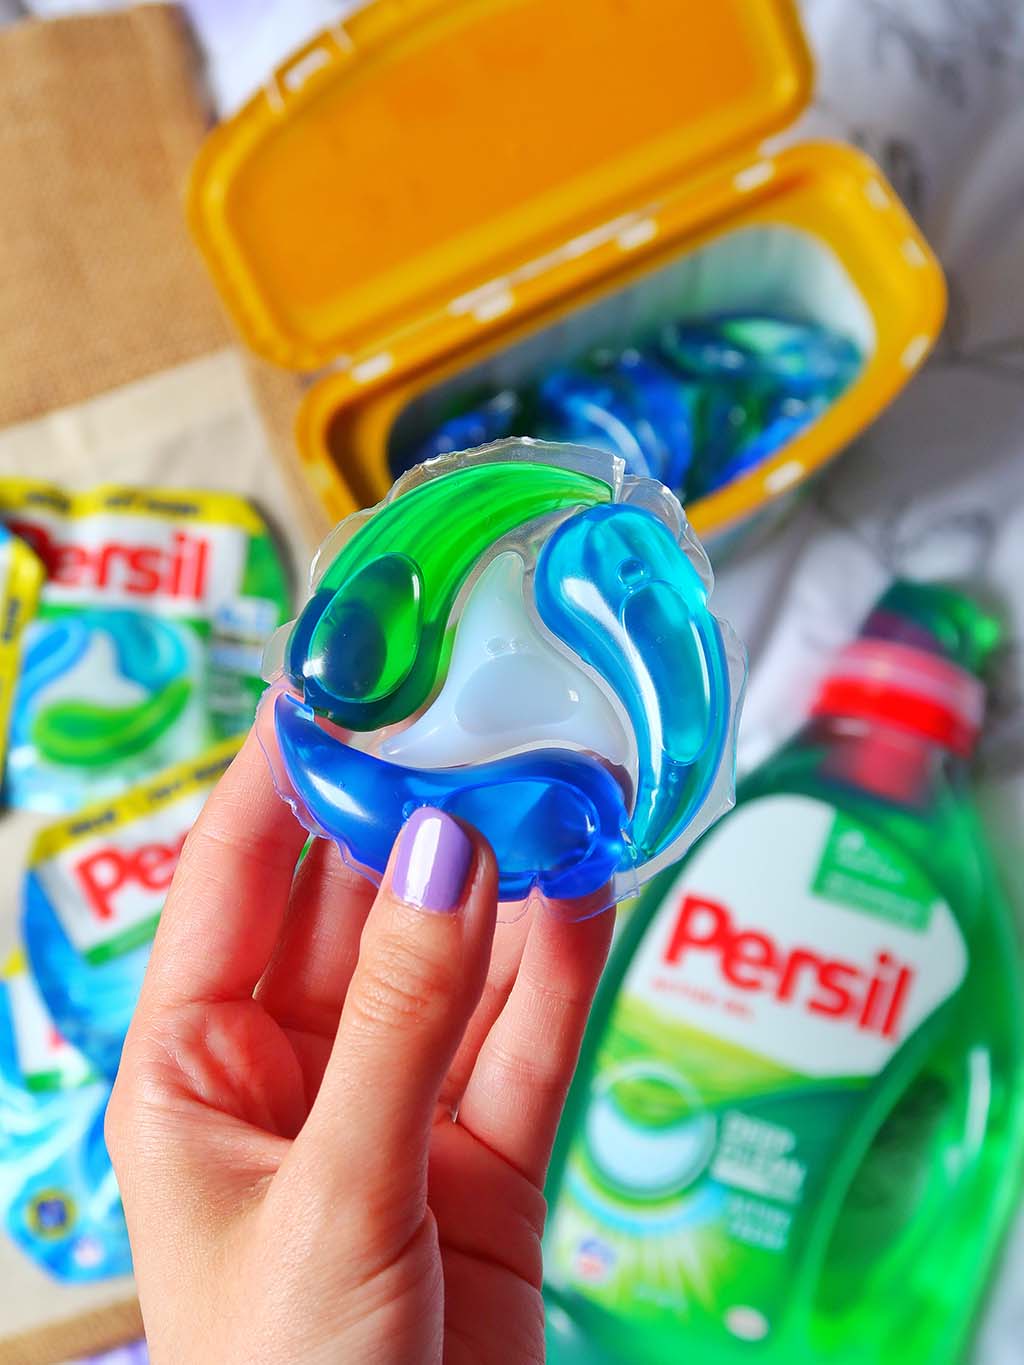 buzzstore recenzie detergent persil deep clean capsule active gel